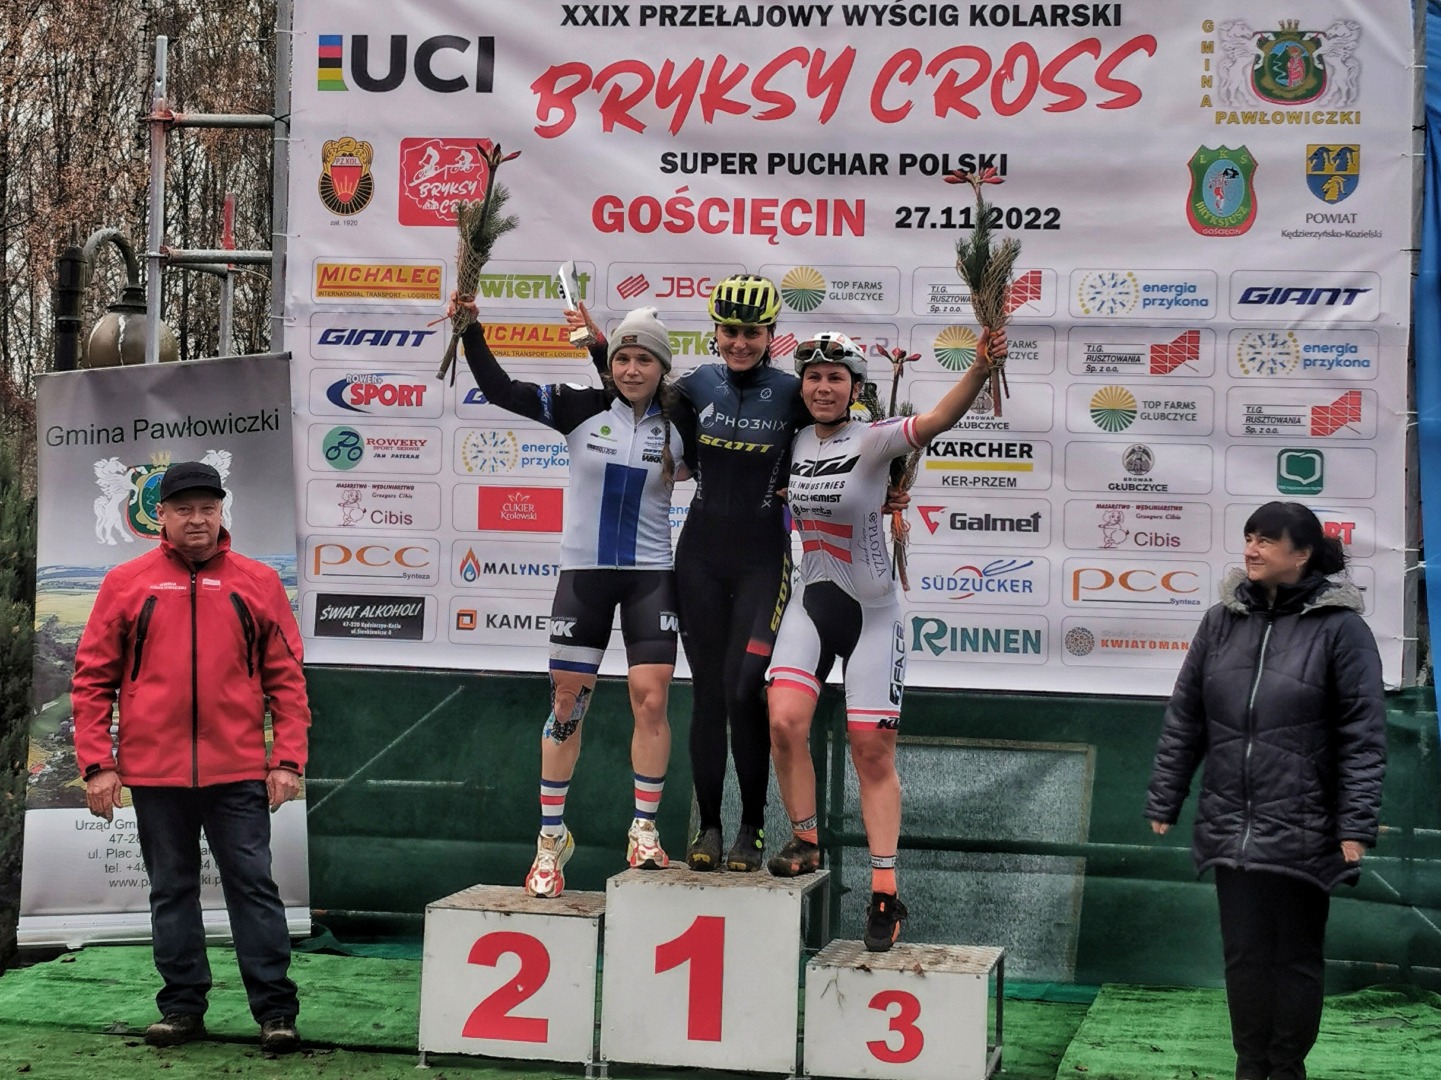 Sukcesy zawodników Pho3nix Cycling Team na Bryksy Cross w Gościęcinie | KOMENTARZ POSTARTOWY